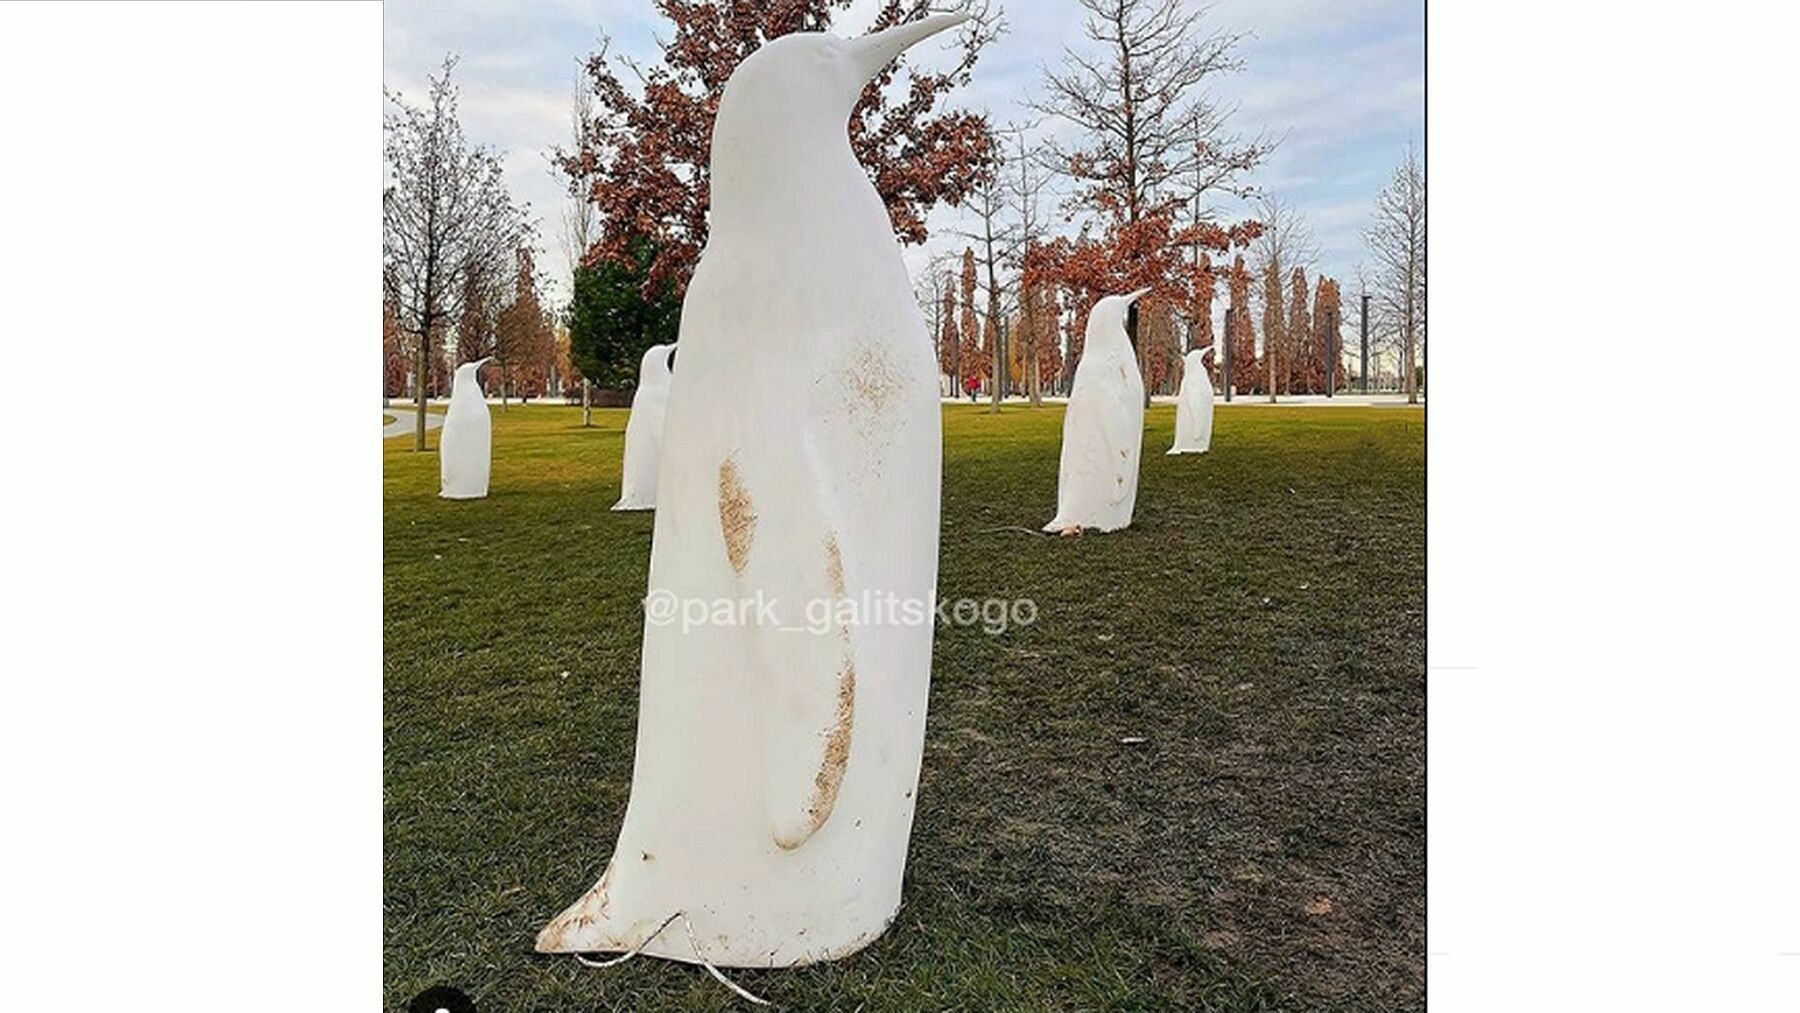 В парке Галицкого вандалы испортили арт-объекты: зачем они это делают